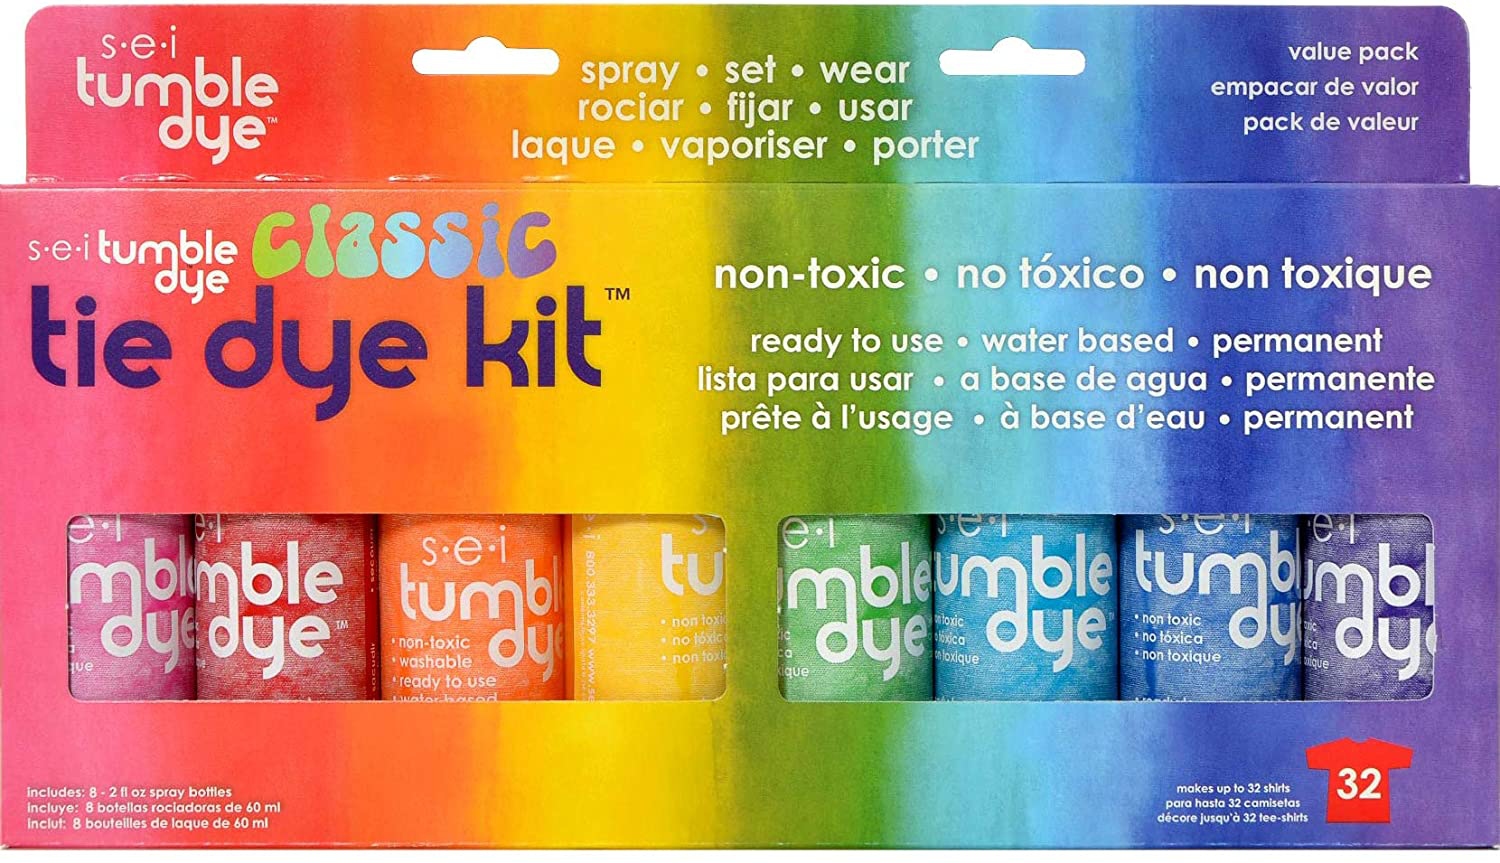 Tie Dye Kit, Fabric Spray Dye, 8 Colors